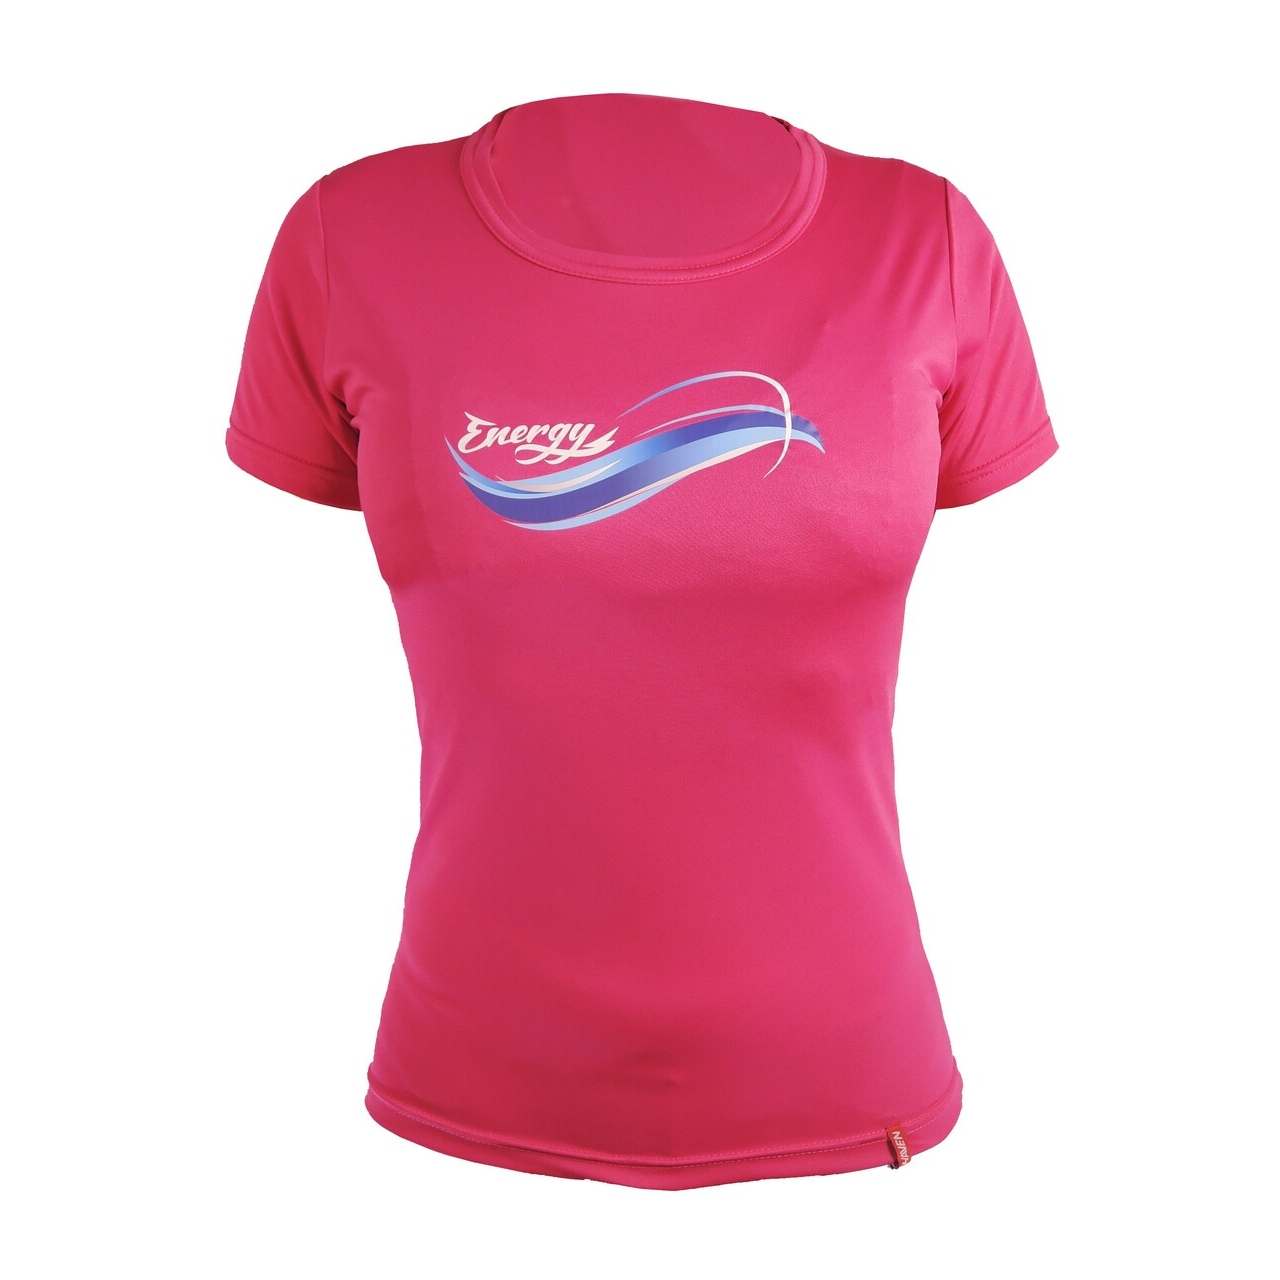 Tričko dámské s krátkým rukávem Haven Energy - růžové, XL